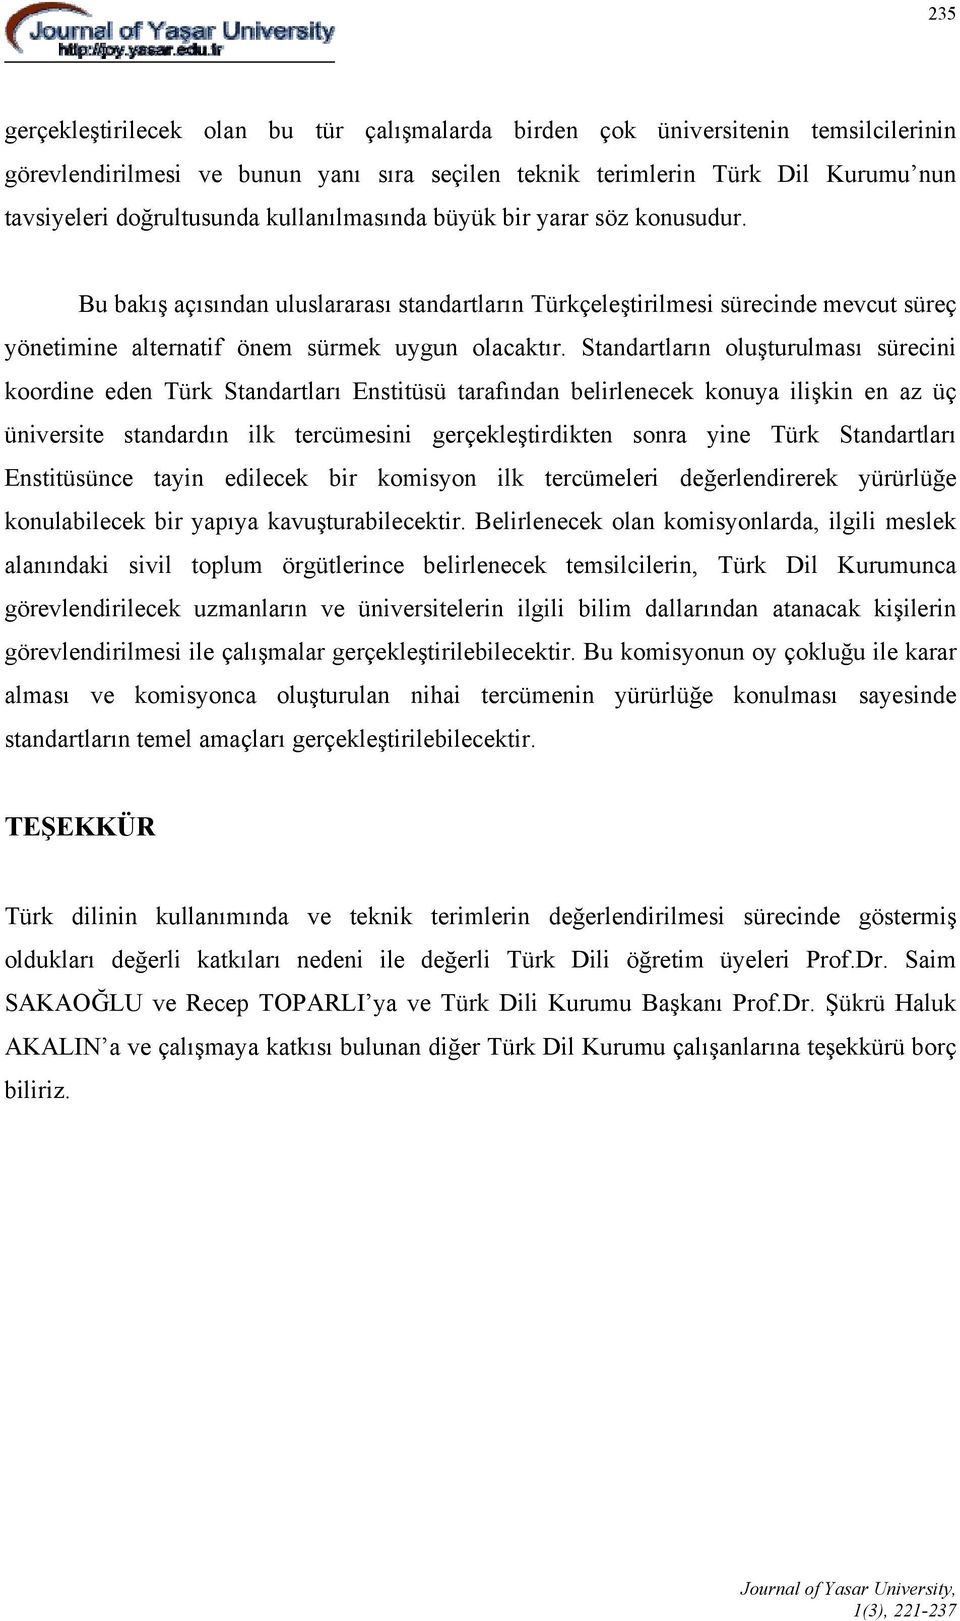 Standartların oluşturulması sürecini koordine eden Türk Standartları Enstitüsü tarafından belirlenecek konuya ilişkin en az üç üniversite standardın ilk tercümesini gerçekleştirdikten sonra yine Türk